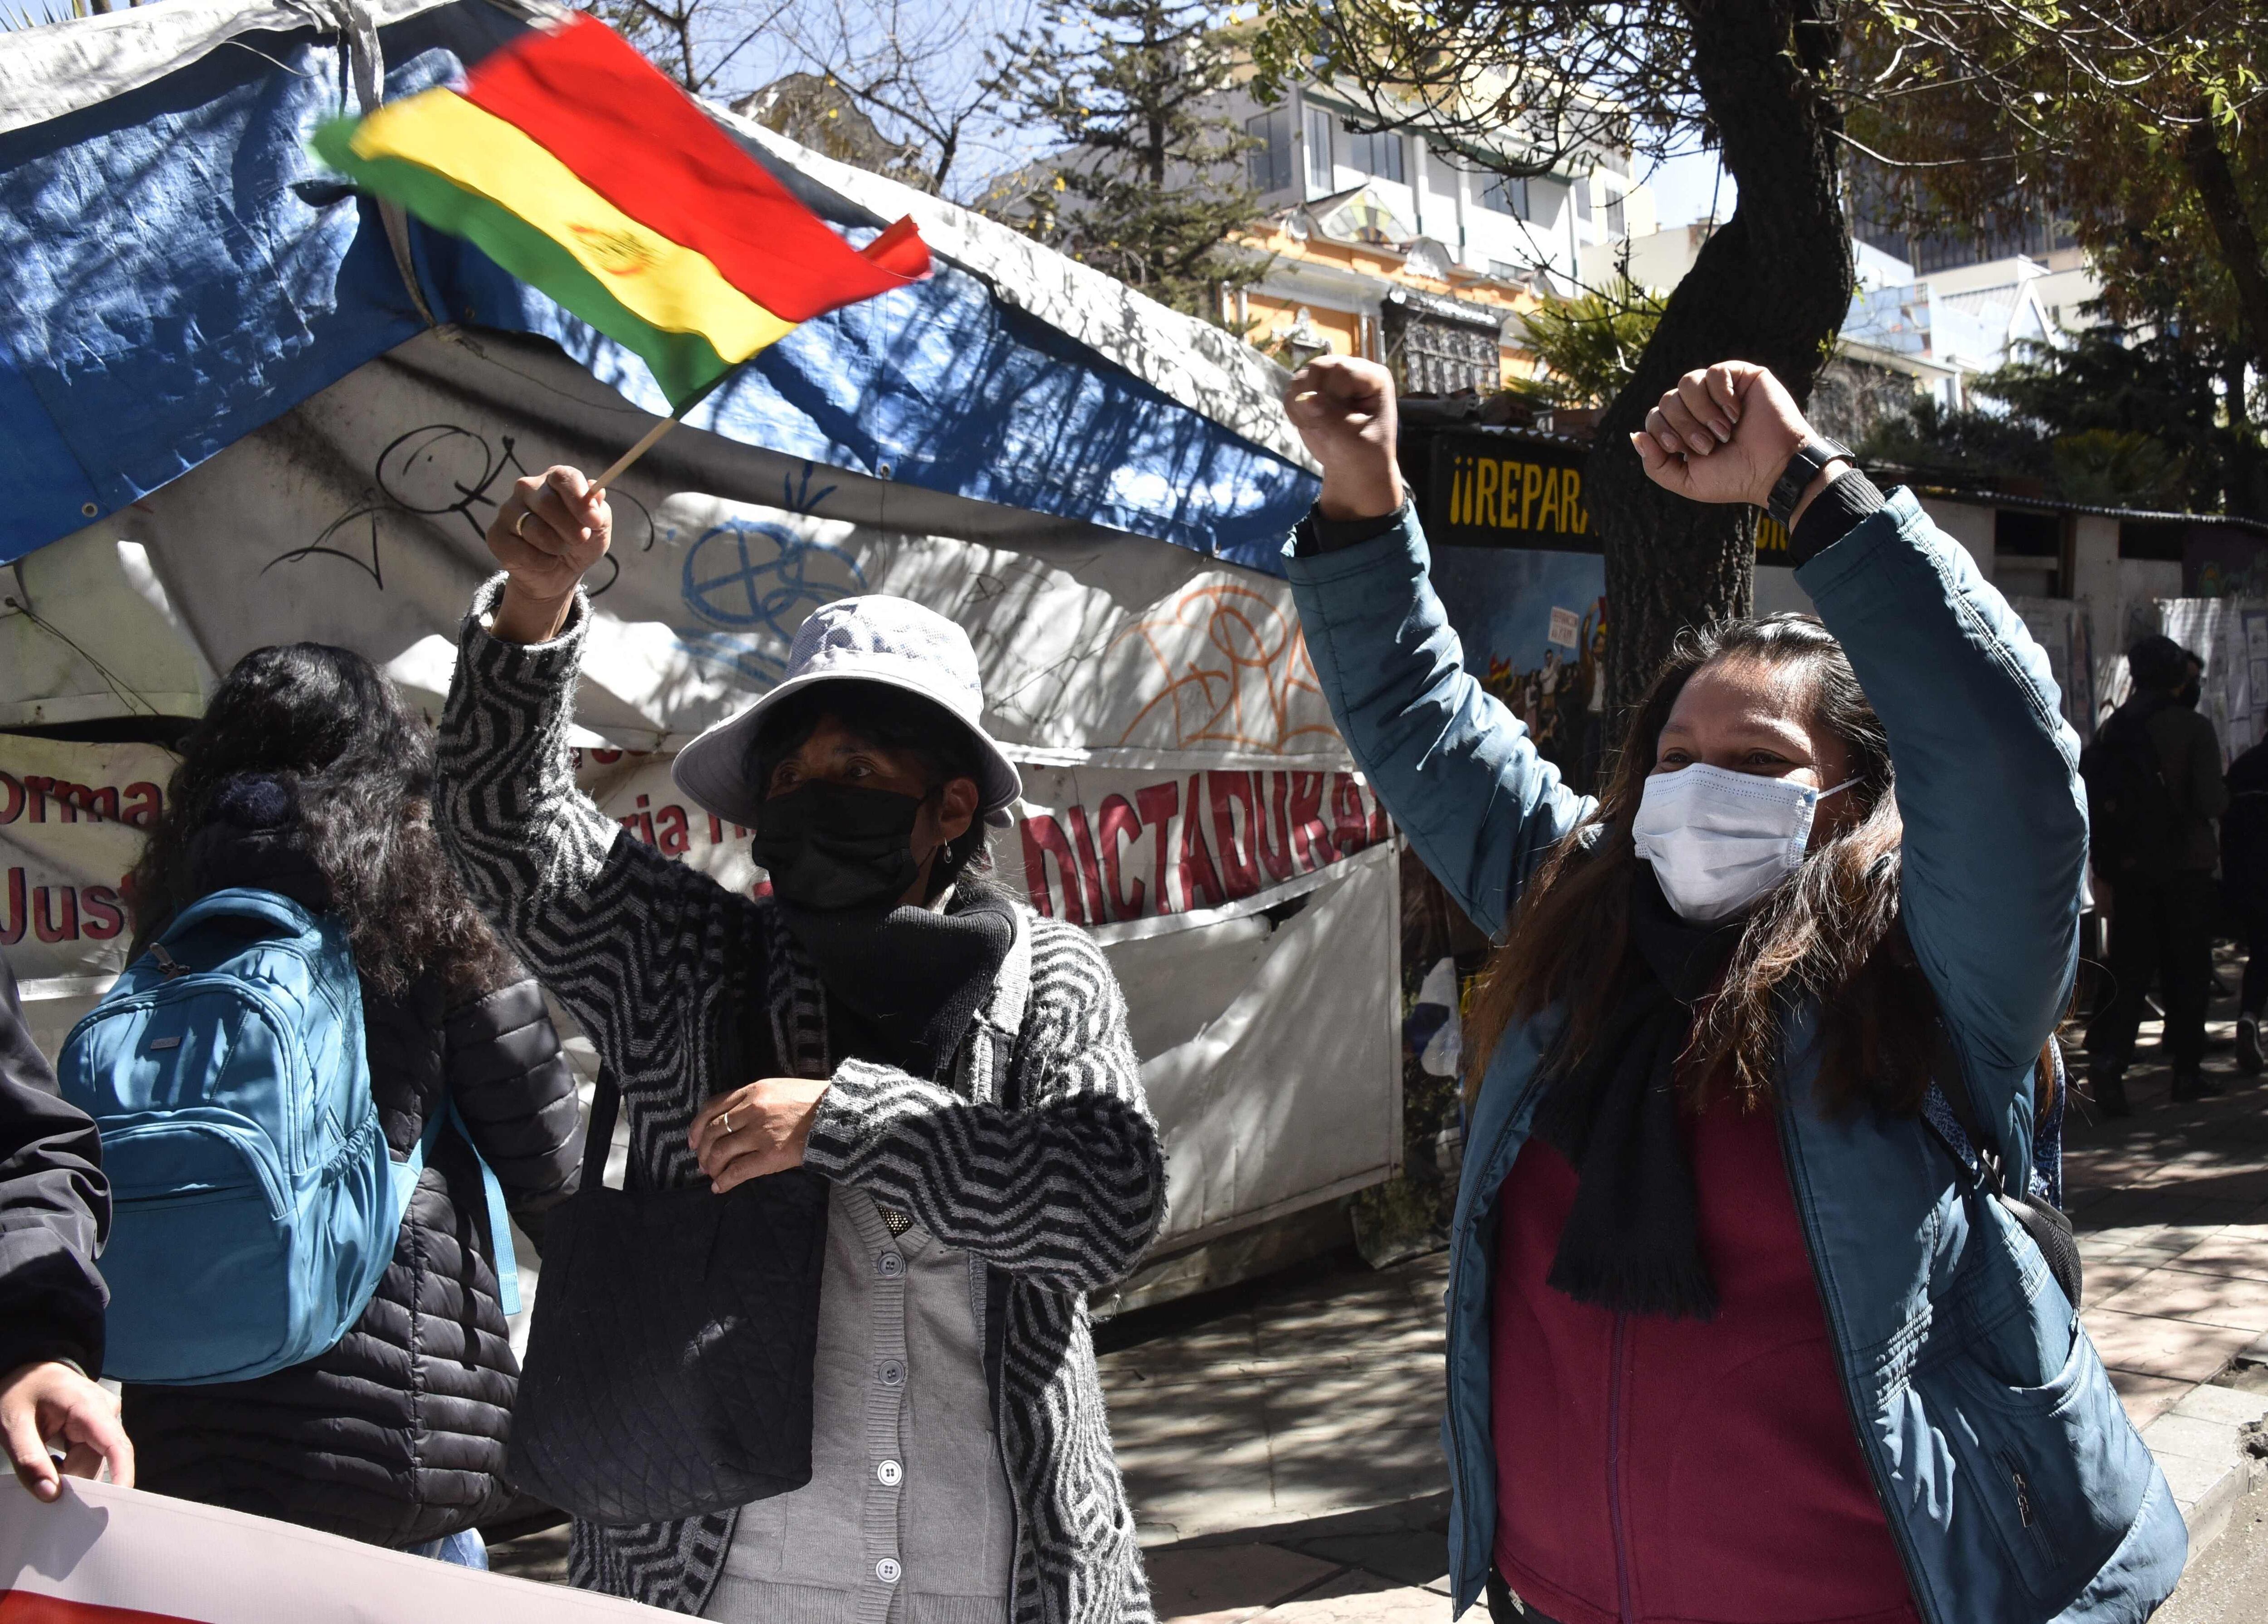 La región de Santa Cruz, locomotora económica de Bolivia, fue escenario de fuertes protestas callejeras desde la detención a fin de diciembre pasado de su gobernador Luis Fernando Camacho, uno de los mayores opositores del gobierno izquierdista del presidente Luis Arce. FOTO: